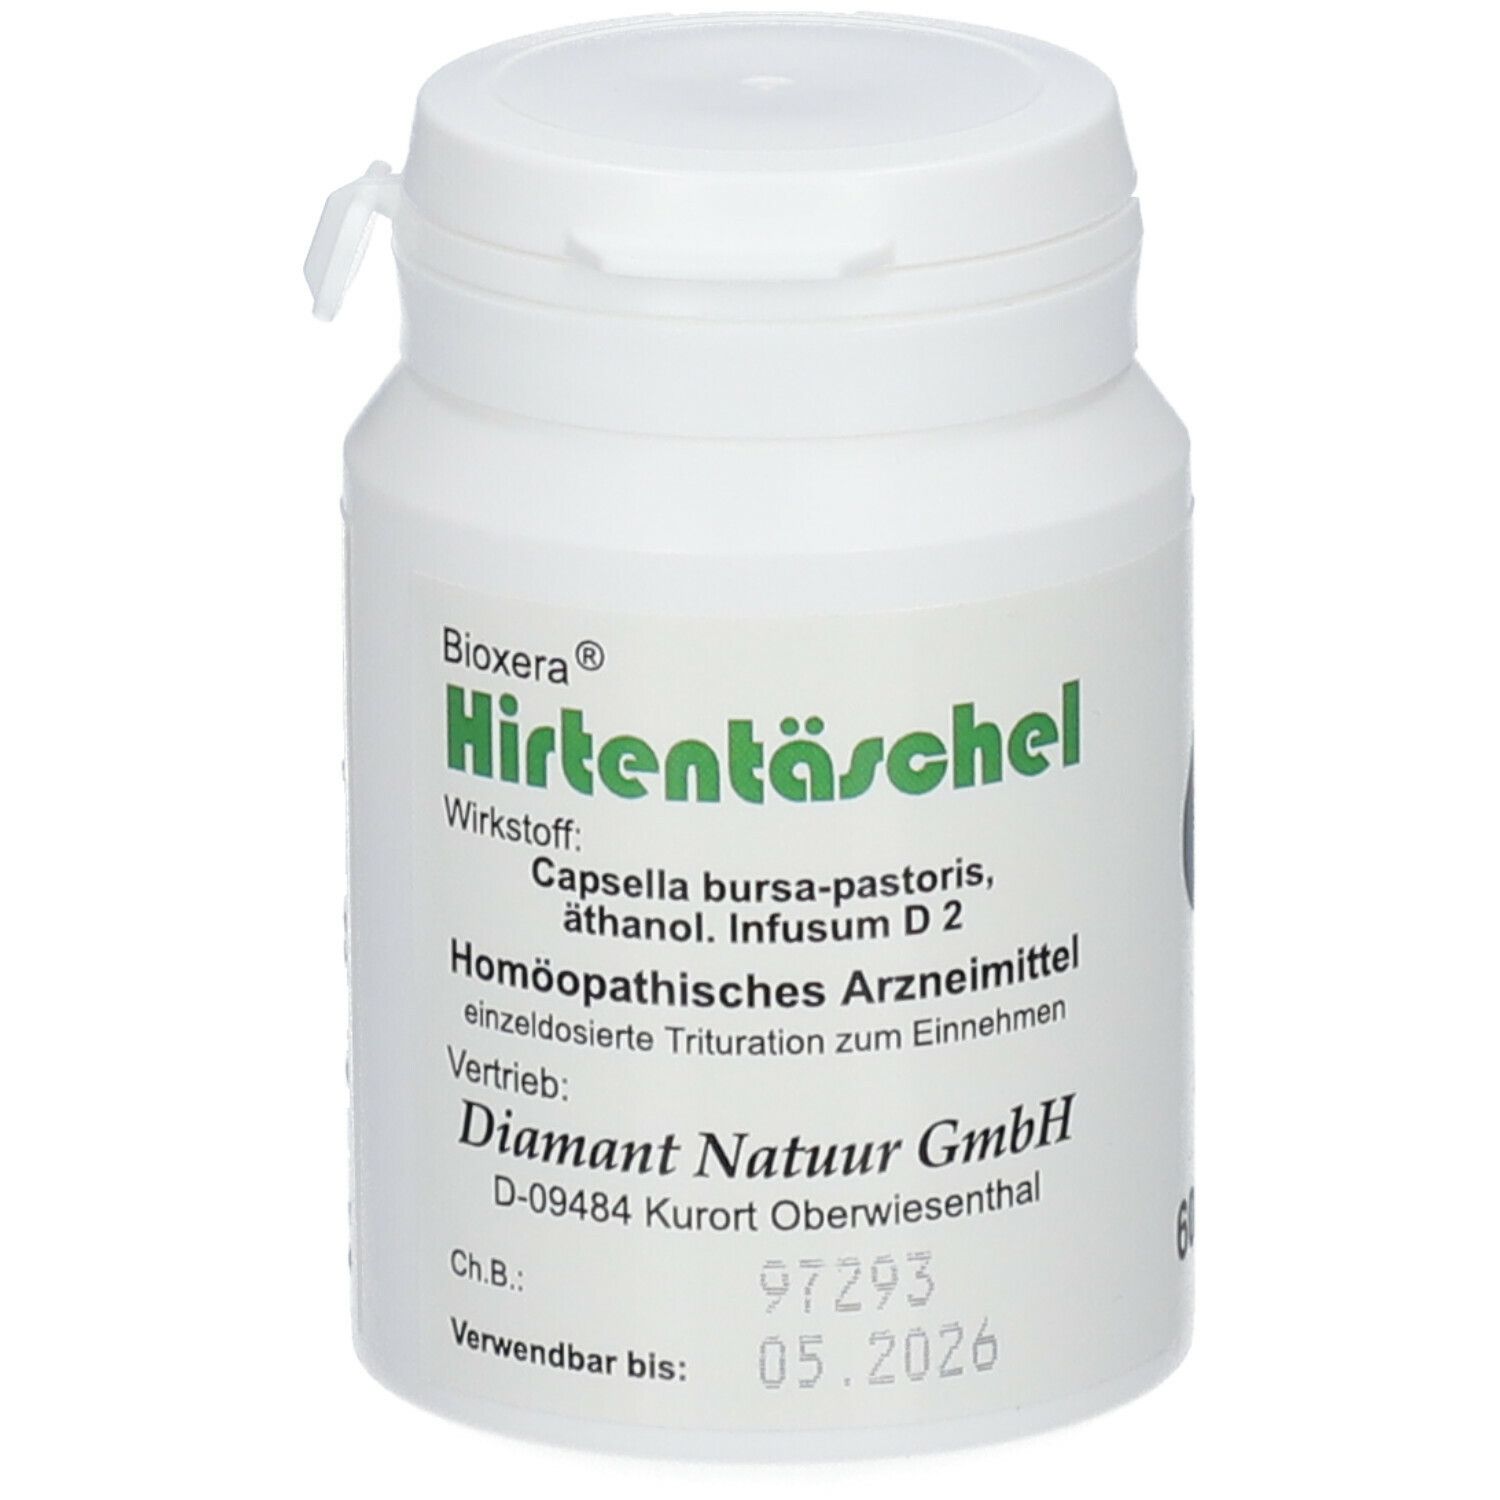 Bioxera® Hirtentaeschel